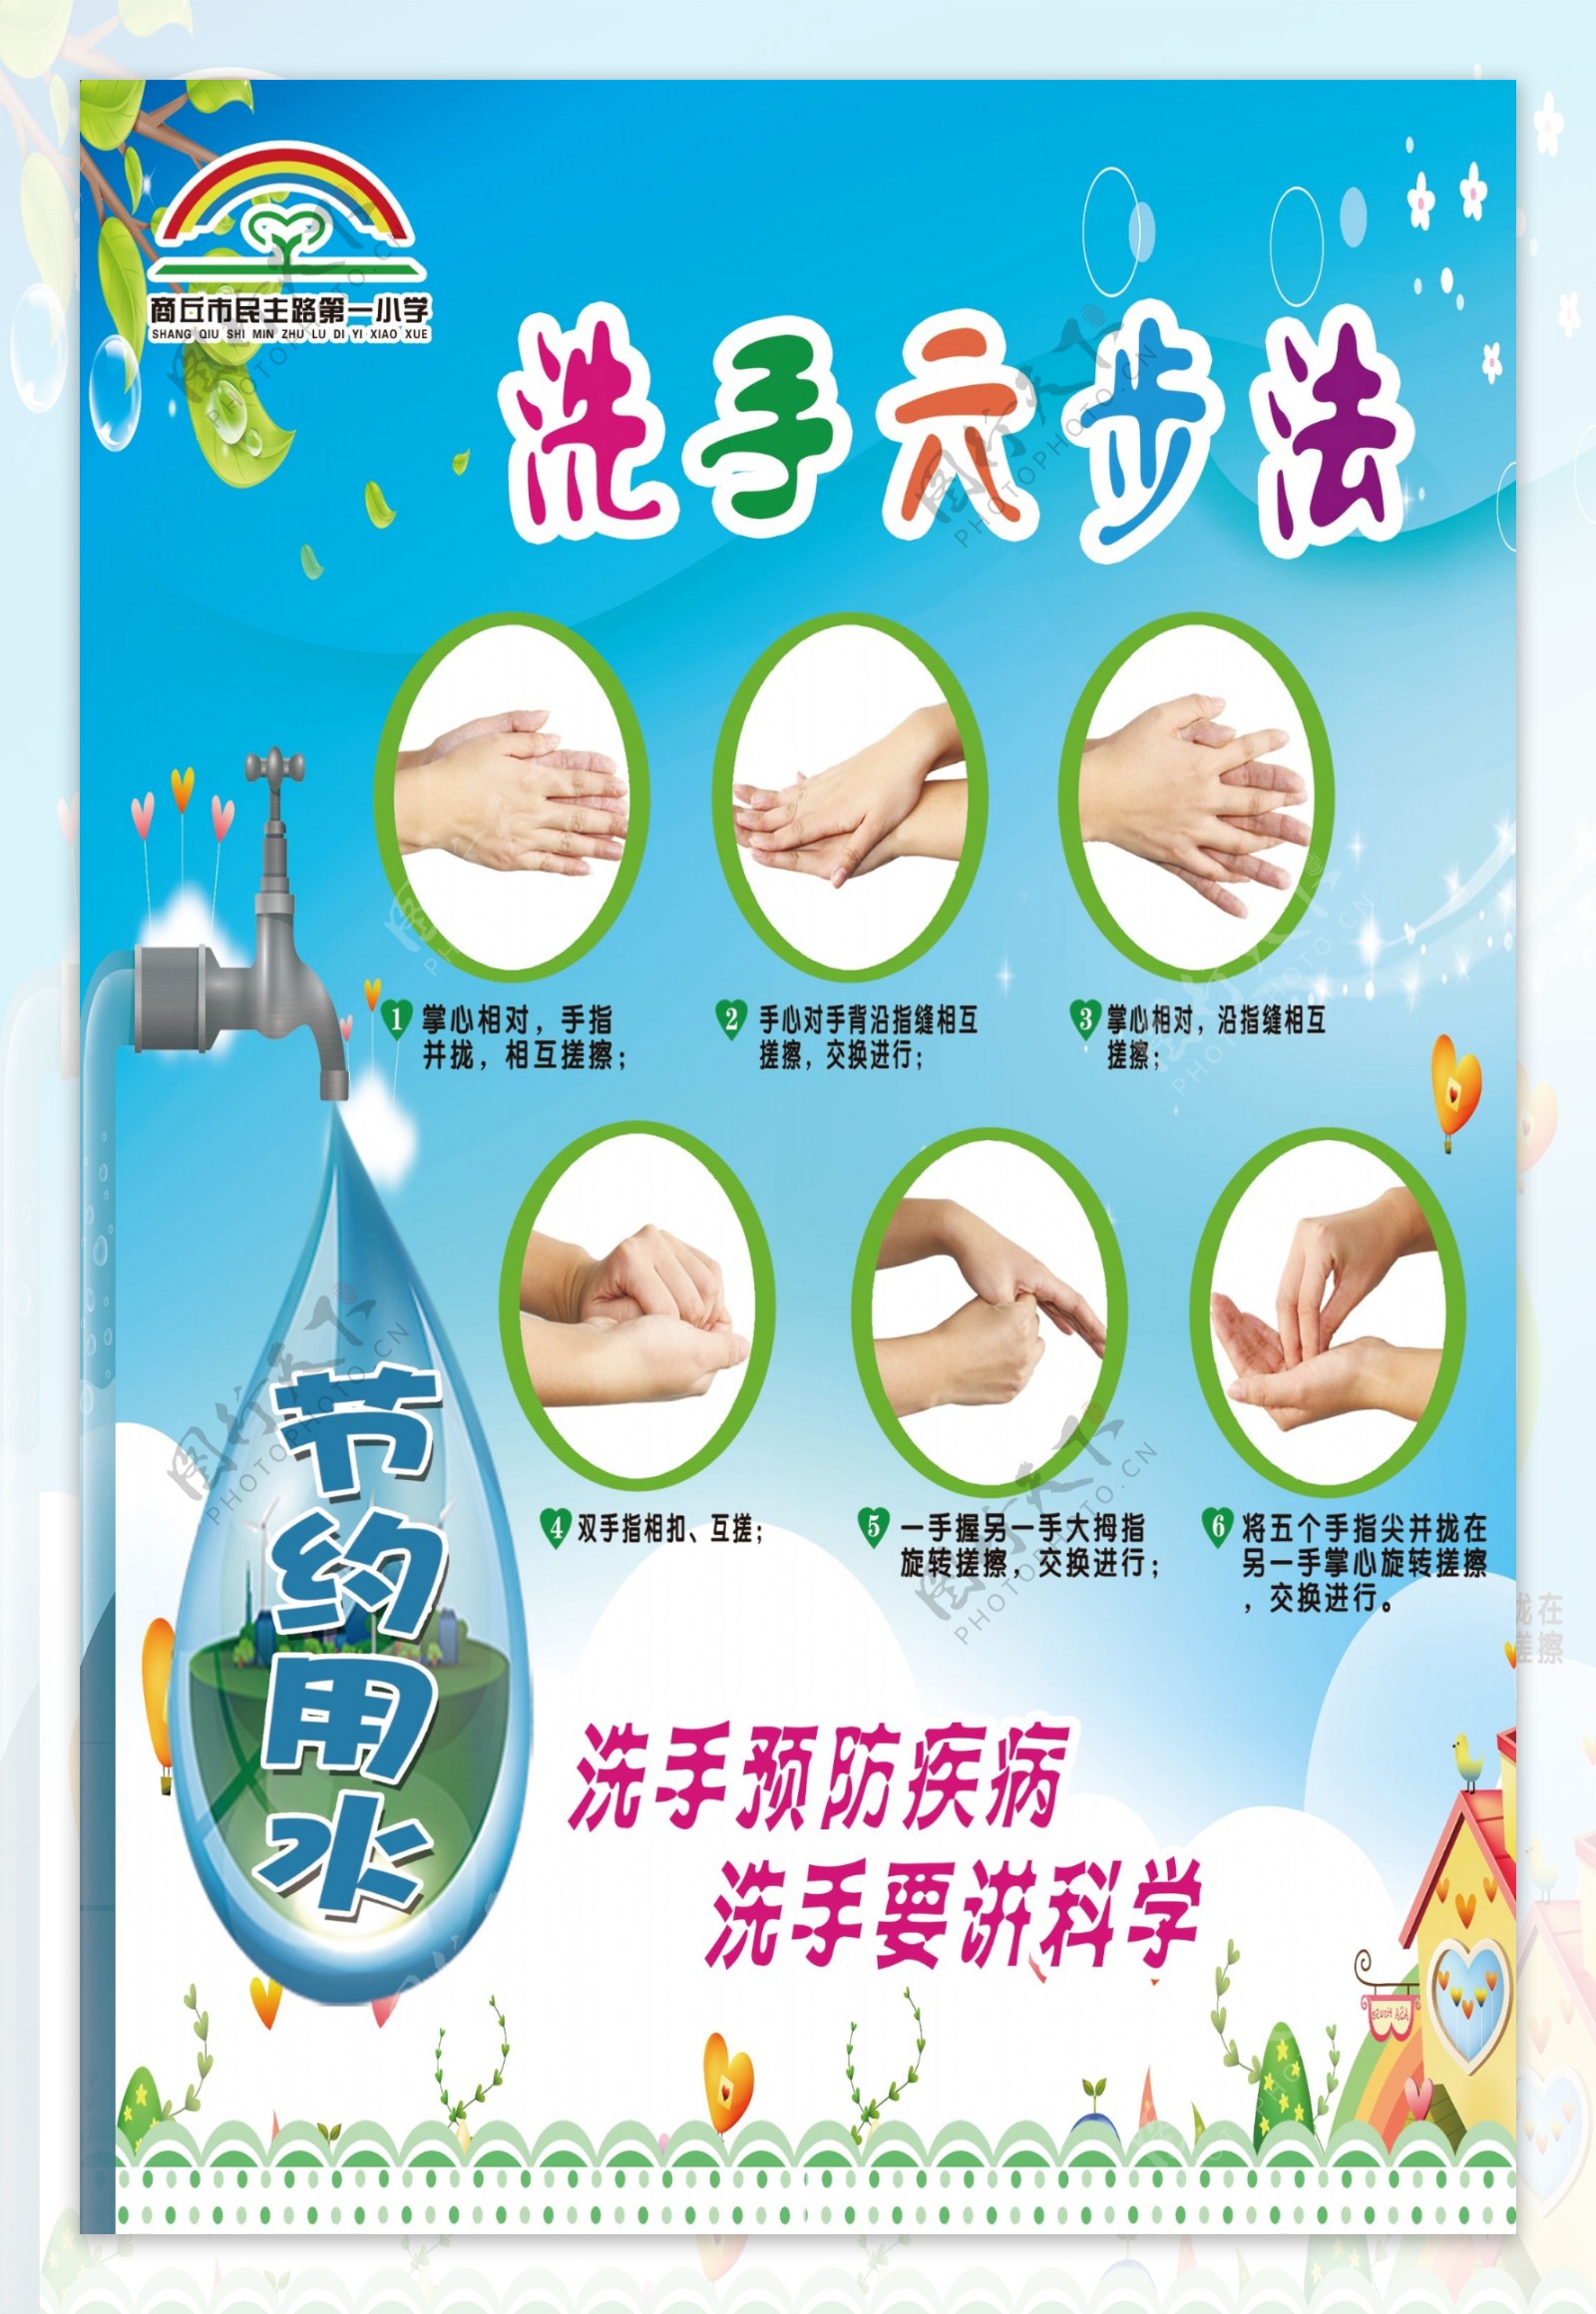 节约用水室外洗手六步法